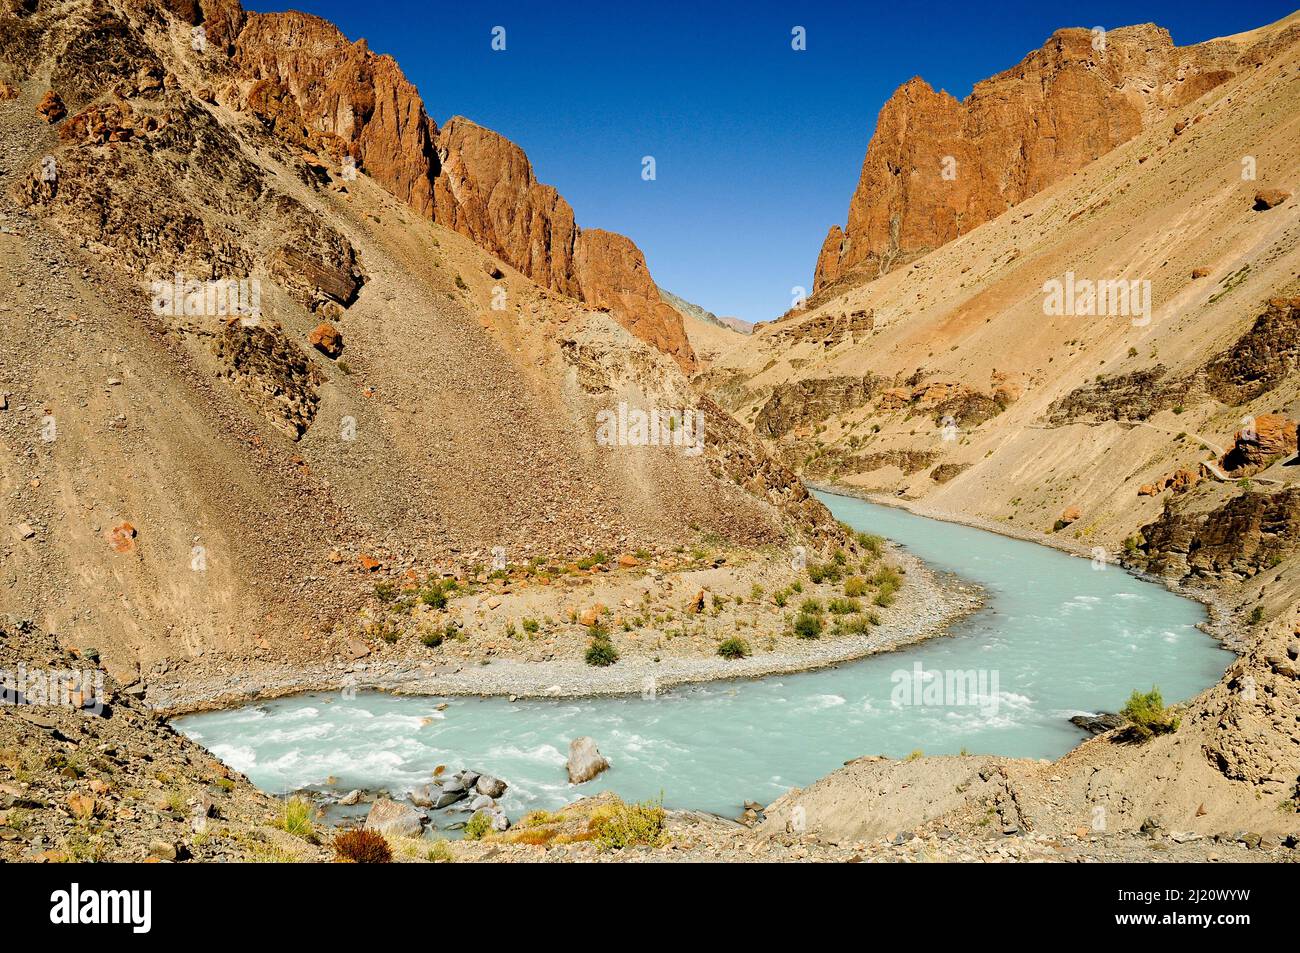 Río Tsarap con agua azul pálido de derretimiento glacial, y el valle circundante. Zanskar, Ladakh, India. Septiembre 2011. Foto de stock